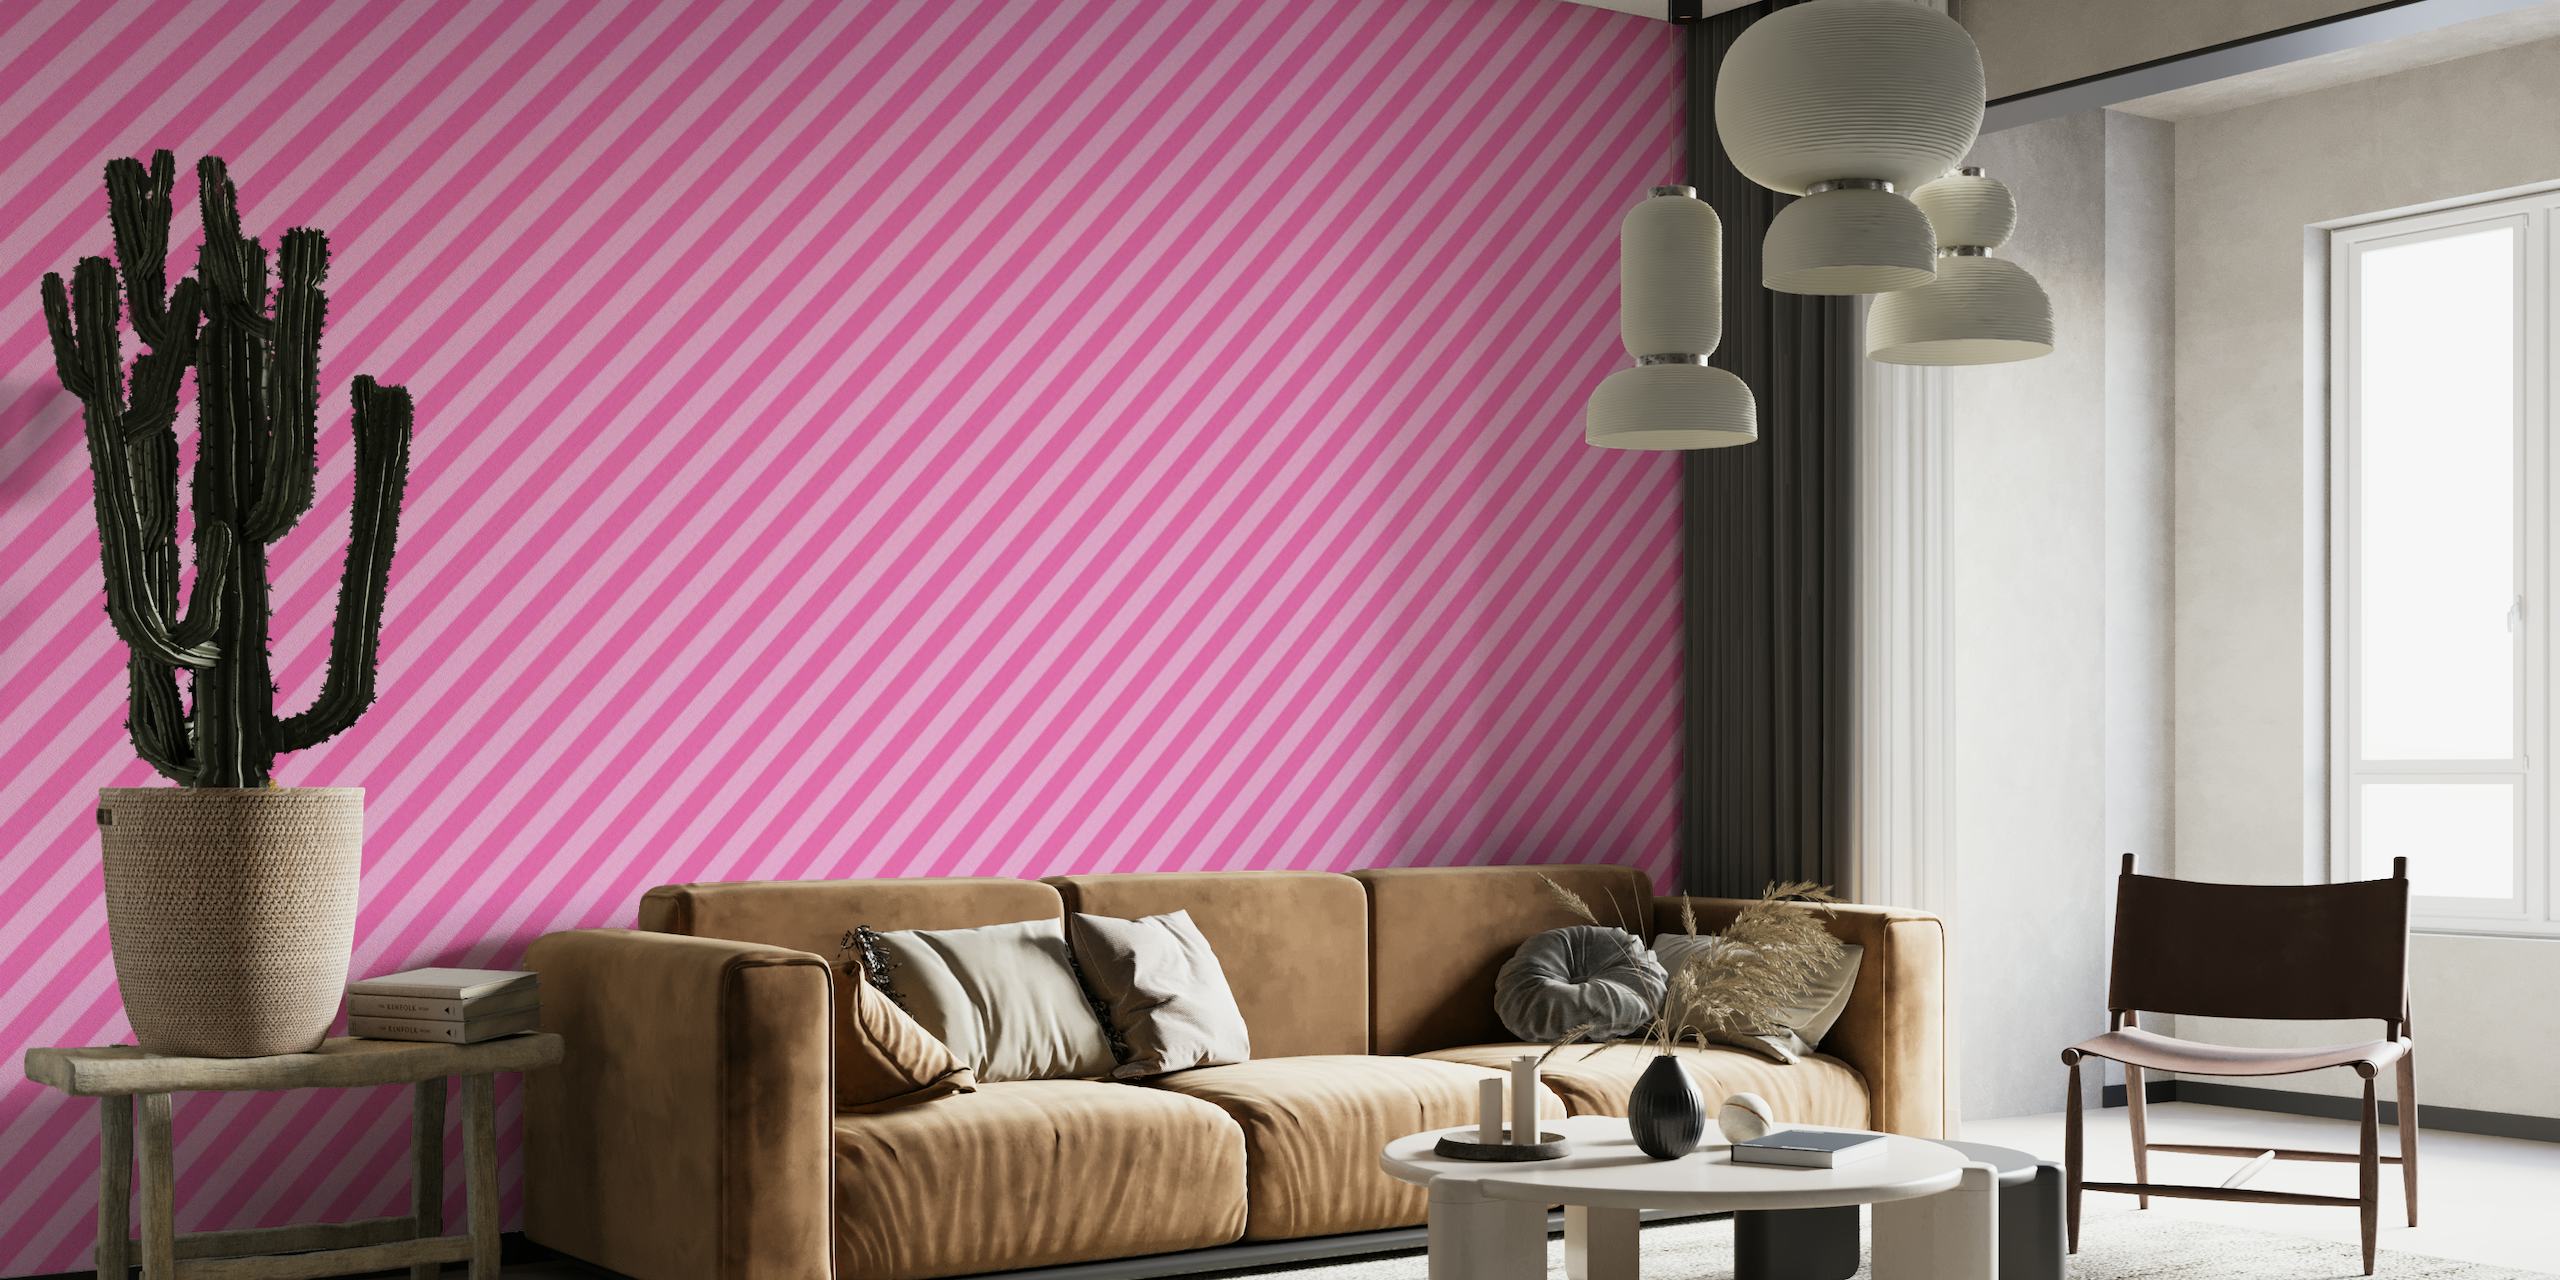 Fotomural vinílico de parede com listras diagonais em rosa vivo e rosa suave